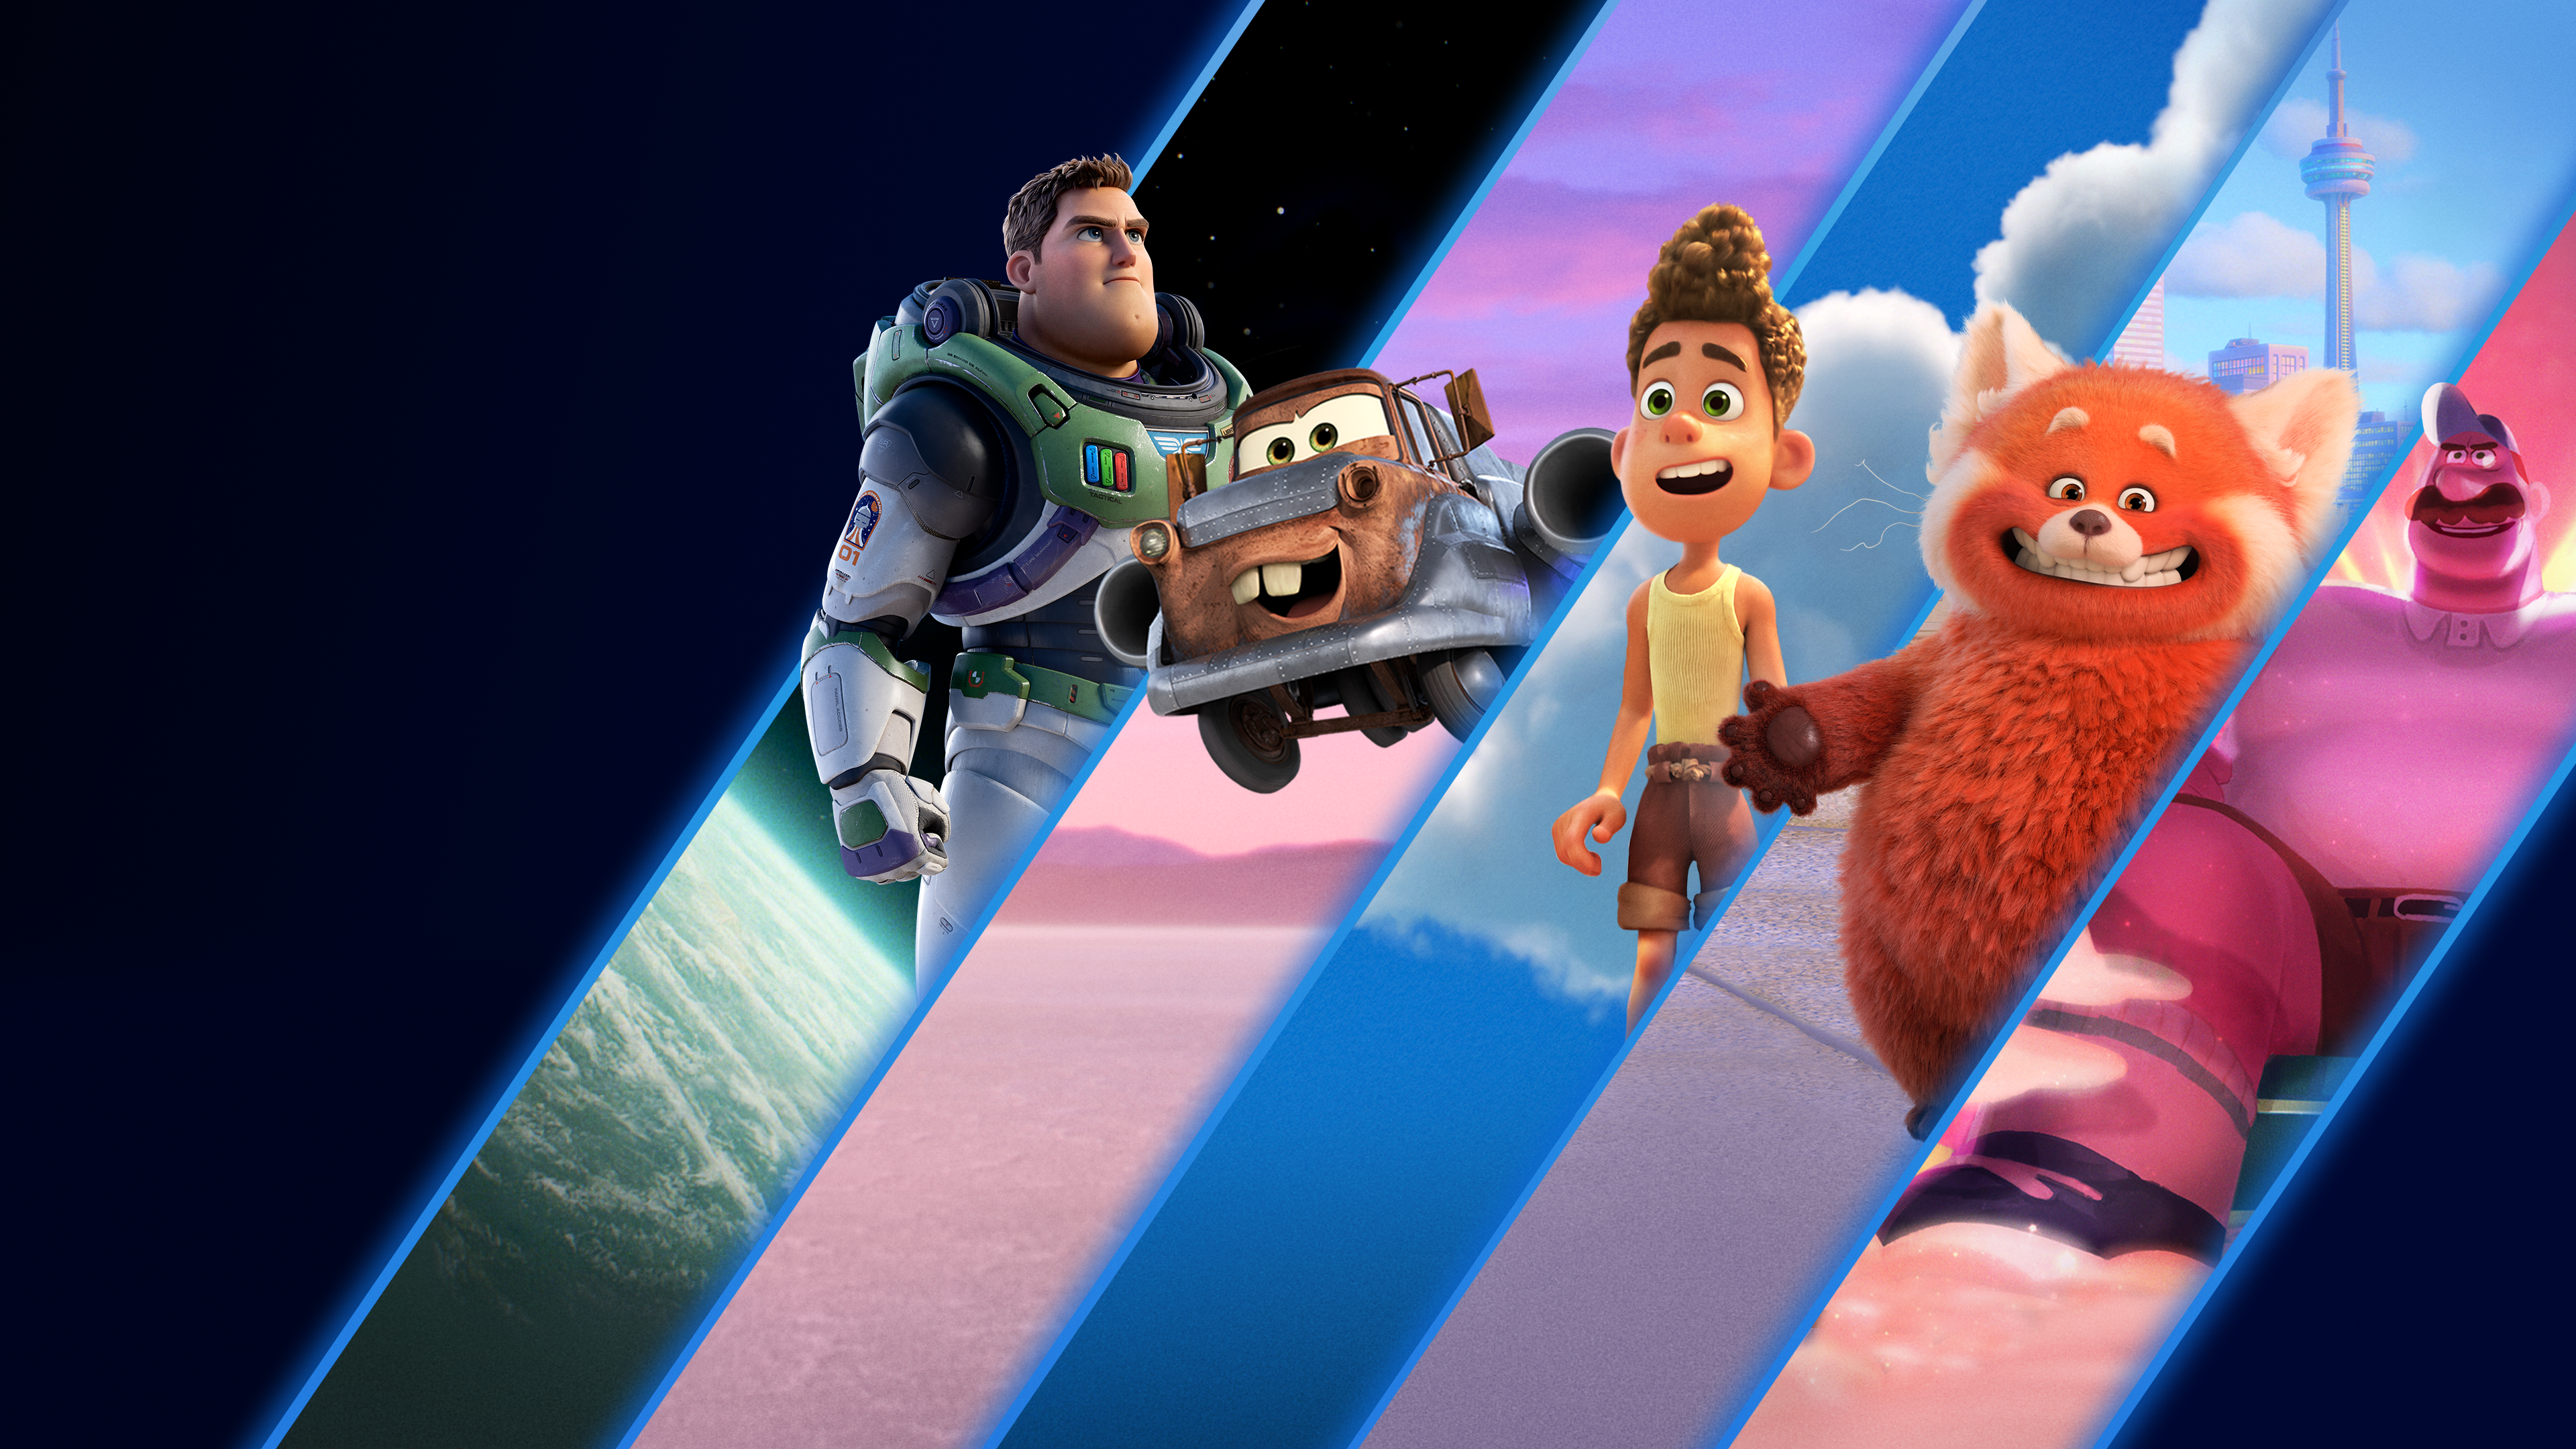 Pixar 2021 Disney+ Day špeciál